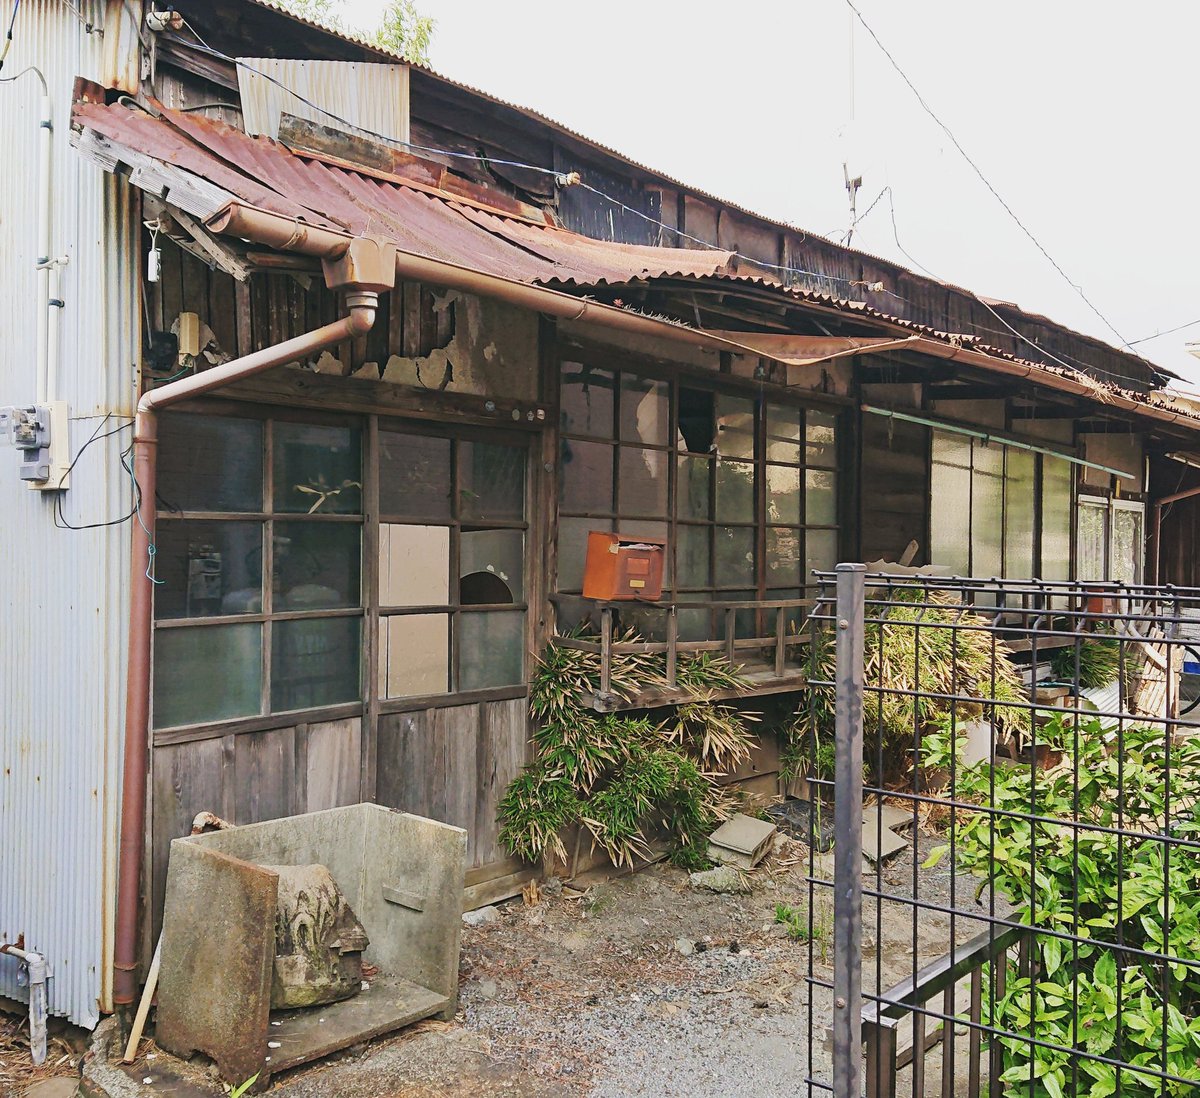 しゅがごん 最近の台風で 家屋の損壊や倒壊が増えてきた 昭和家屋 もだんだん消え去っていくんだろう 錆び 錆